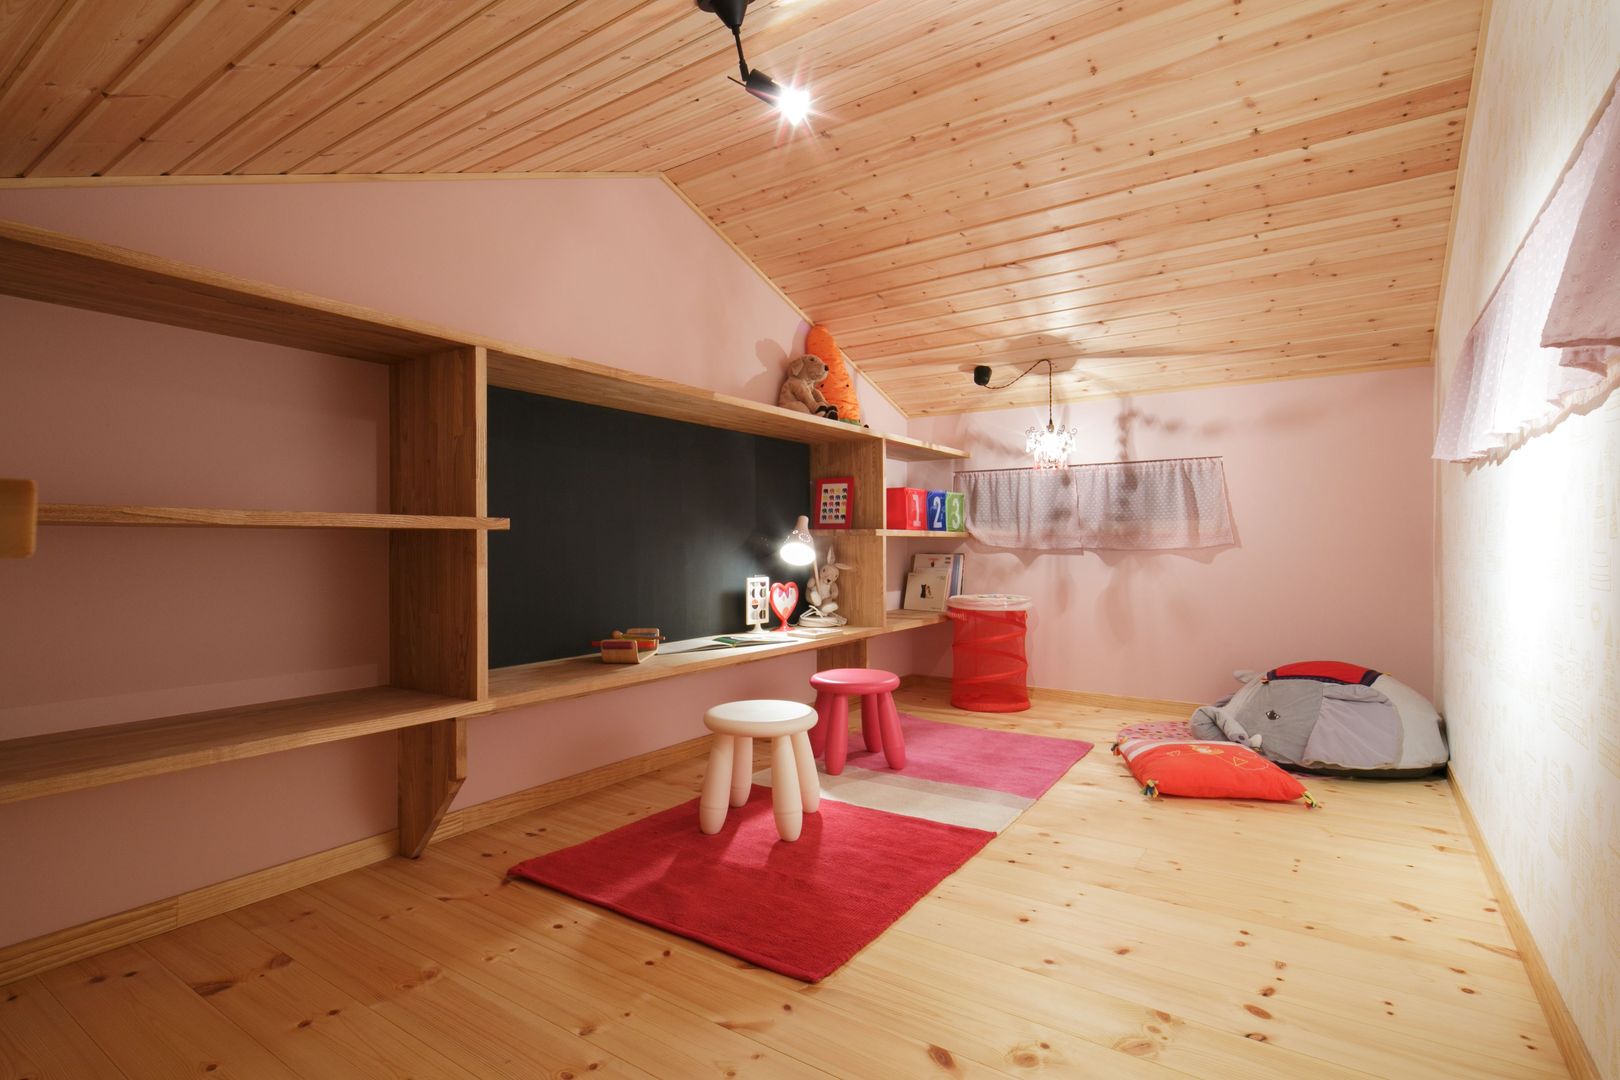 H's HOUSE, dwarf dwarf Habitaciones para niños de estilo escandinavo